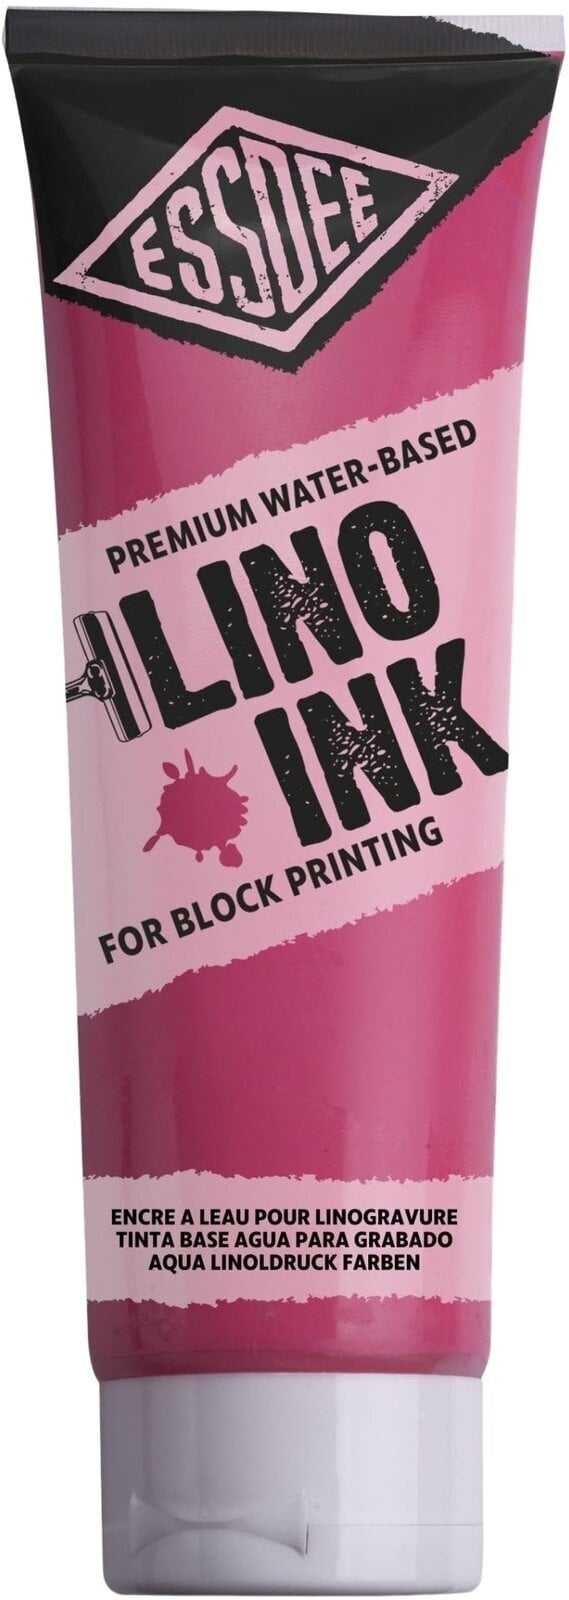 Pintura para linograbado Essdee Block Printing Ink Pintura para linograbado Fluorescent Red 300 ml